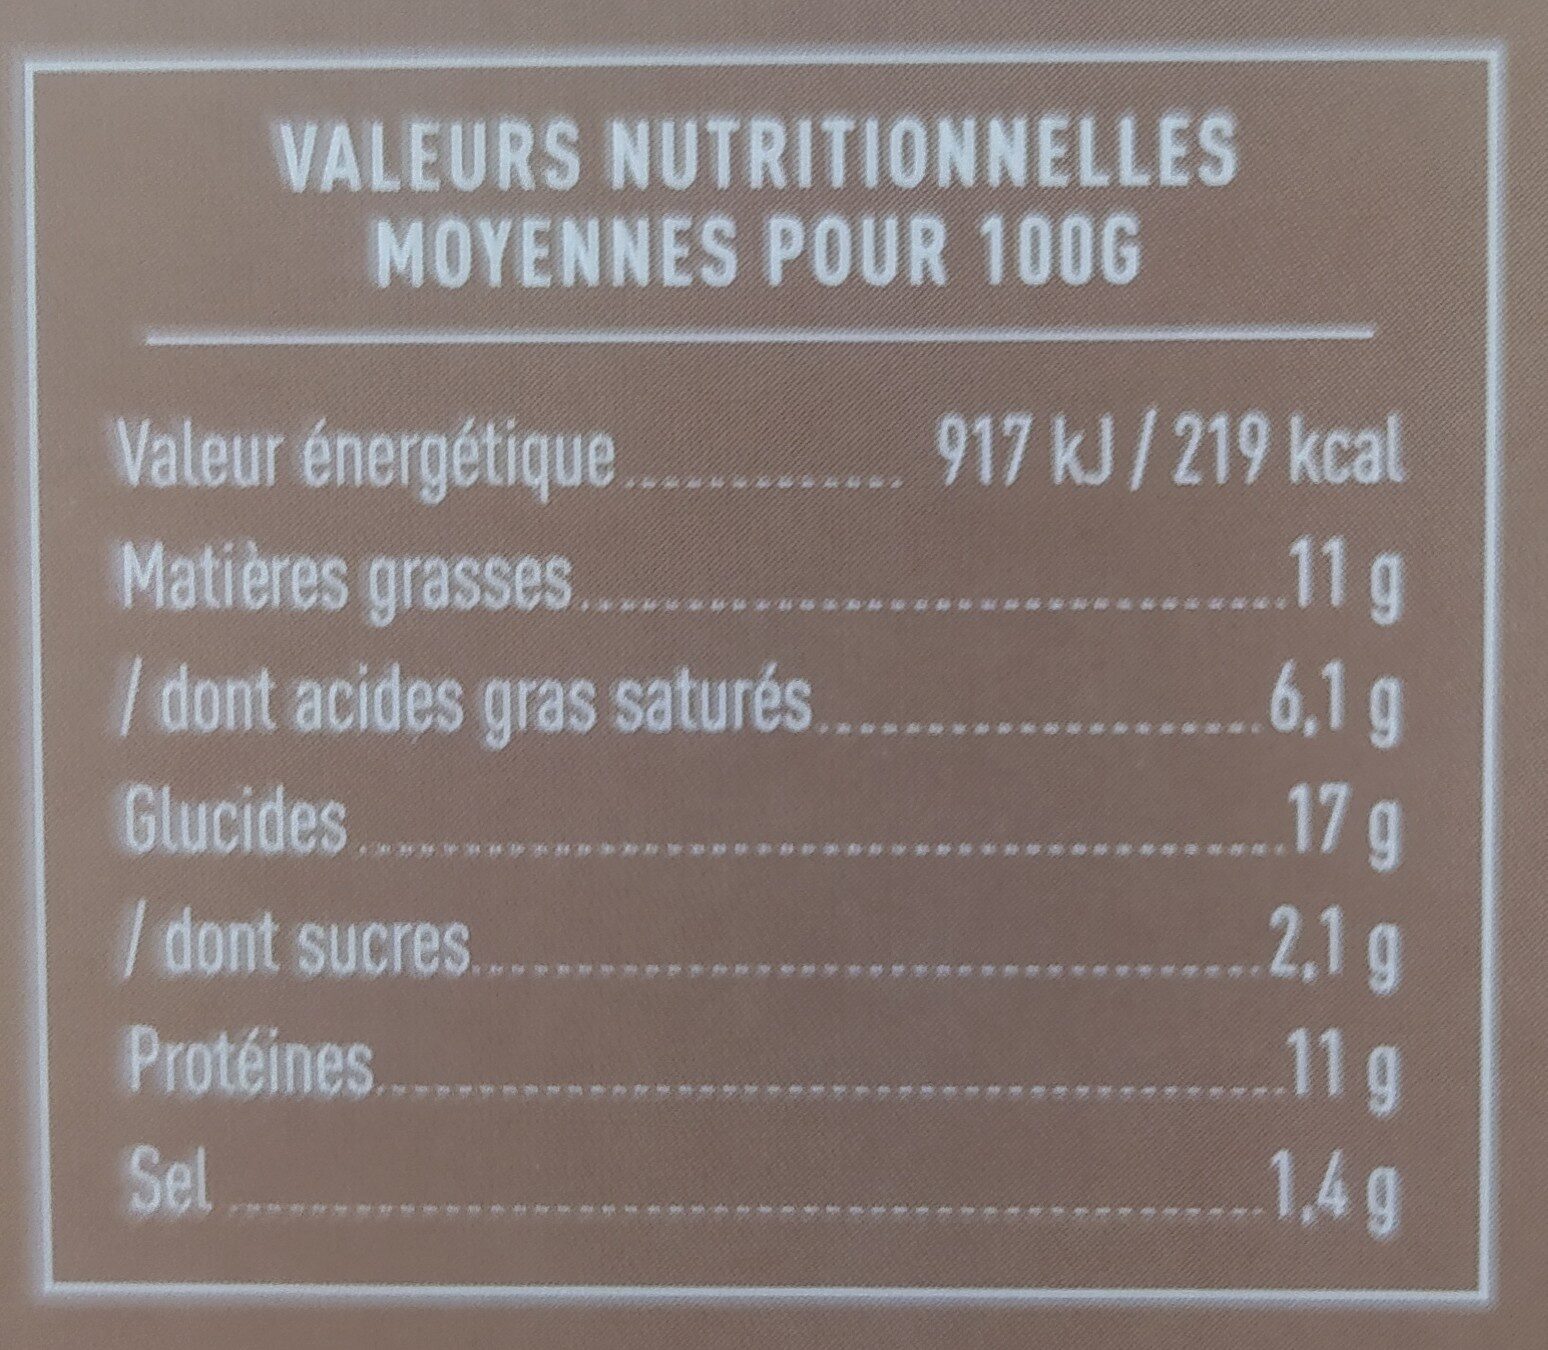 Canapés traiteur x 16 - Nutrition facts - fr